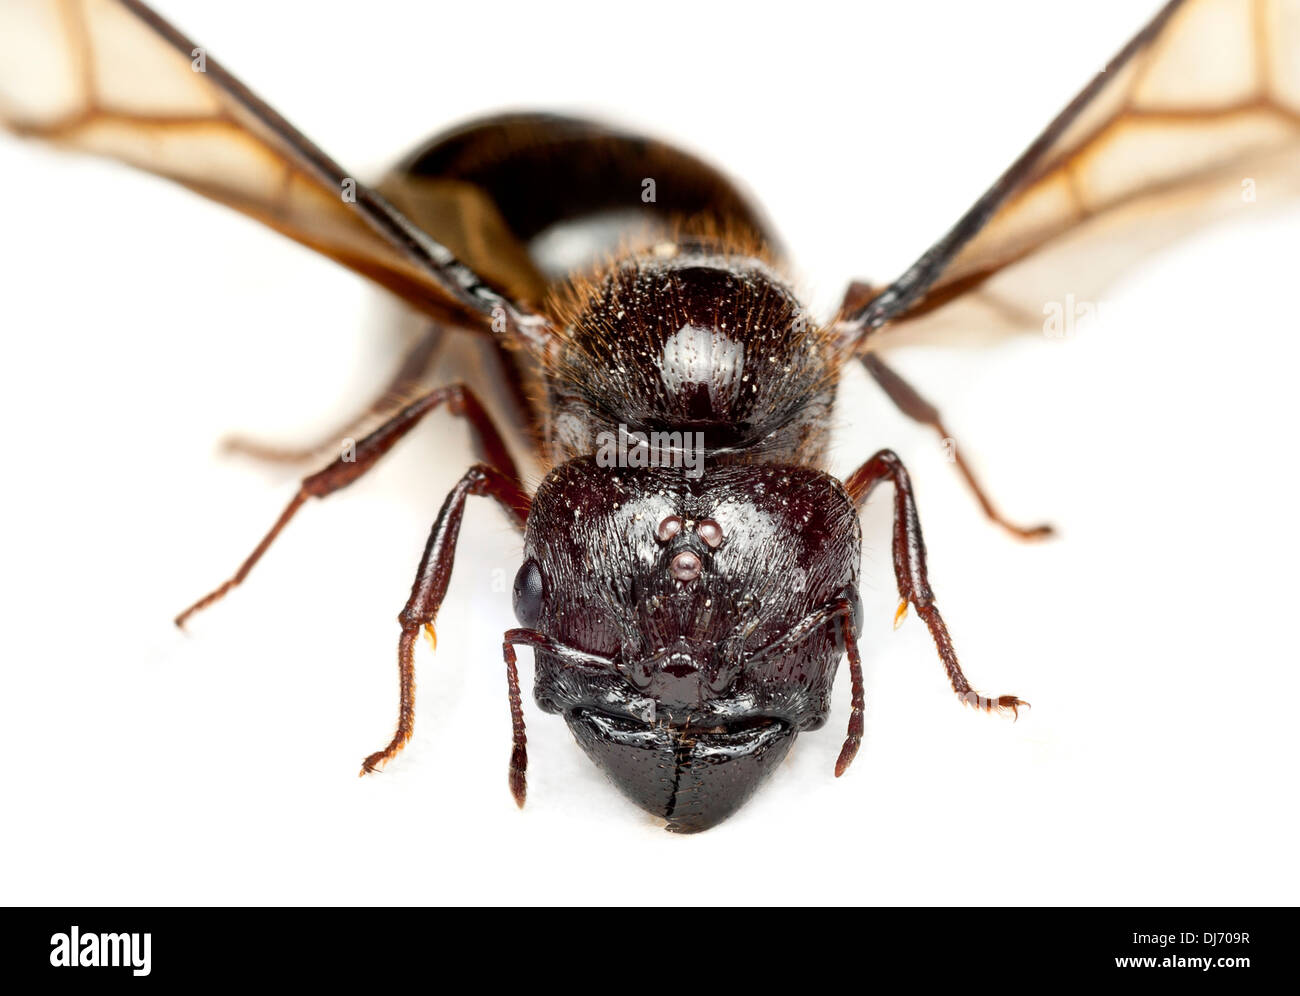 Eine große Königin, fliegende Ameise, Malaysia, Kopf und Kiefer Detail. Gattung Pheidole. Diese sind bekannt als große Leitung Ameisen Stockfoto